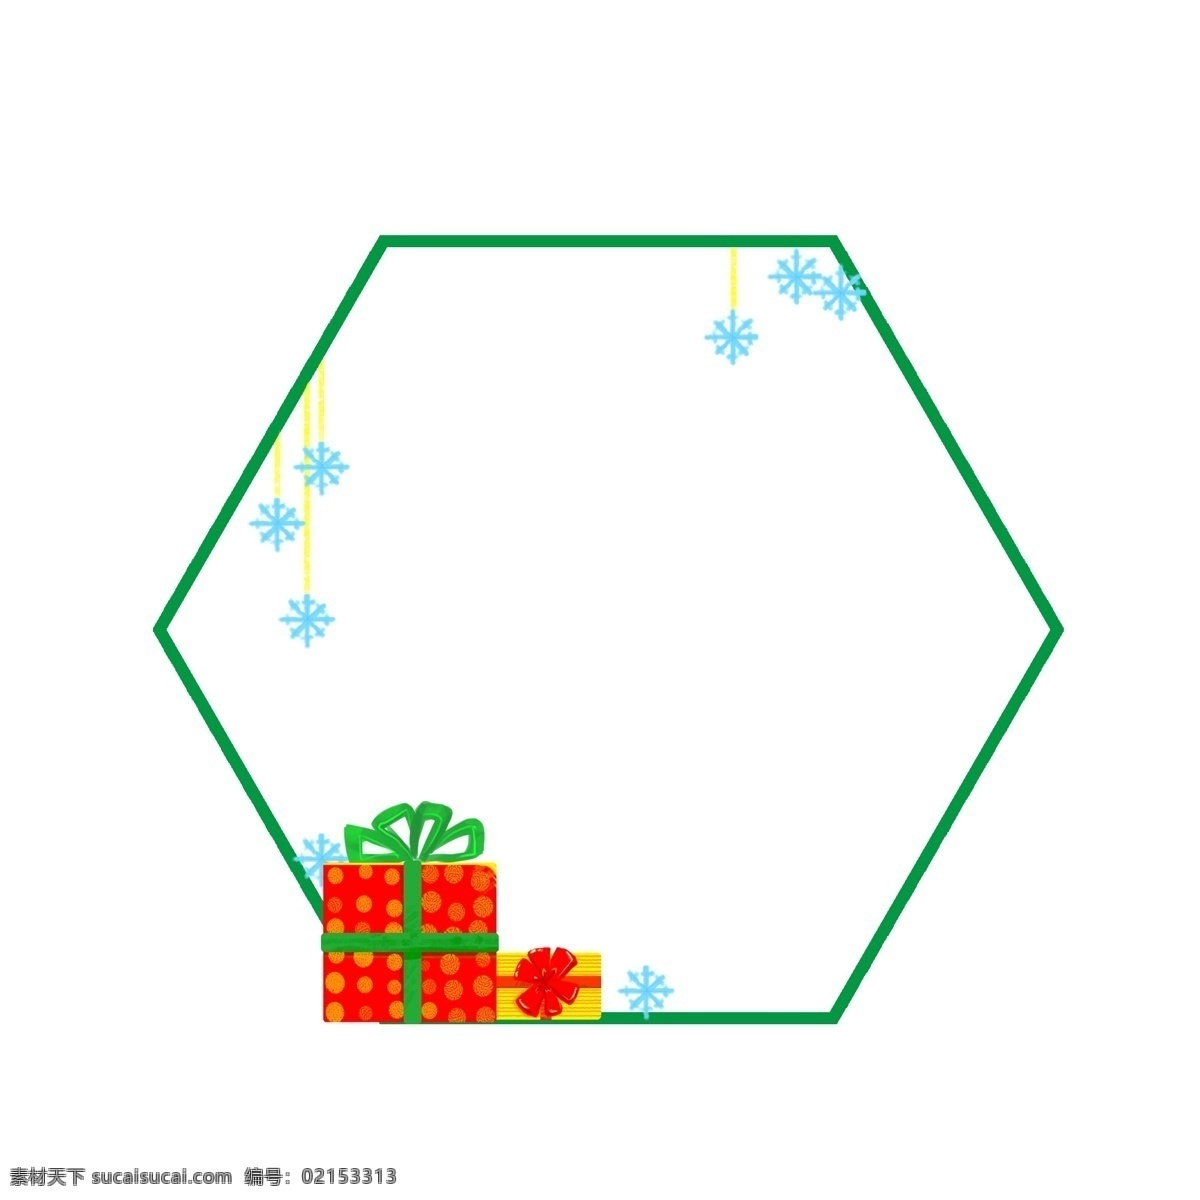 圣诞节 礼盒 边框 插画 绿色的边框 蓝色的雪花 漂亮的边框 手绘边框 手绘 红色的礼盒